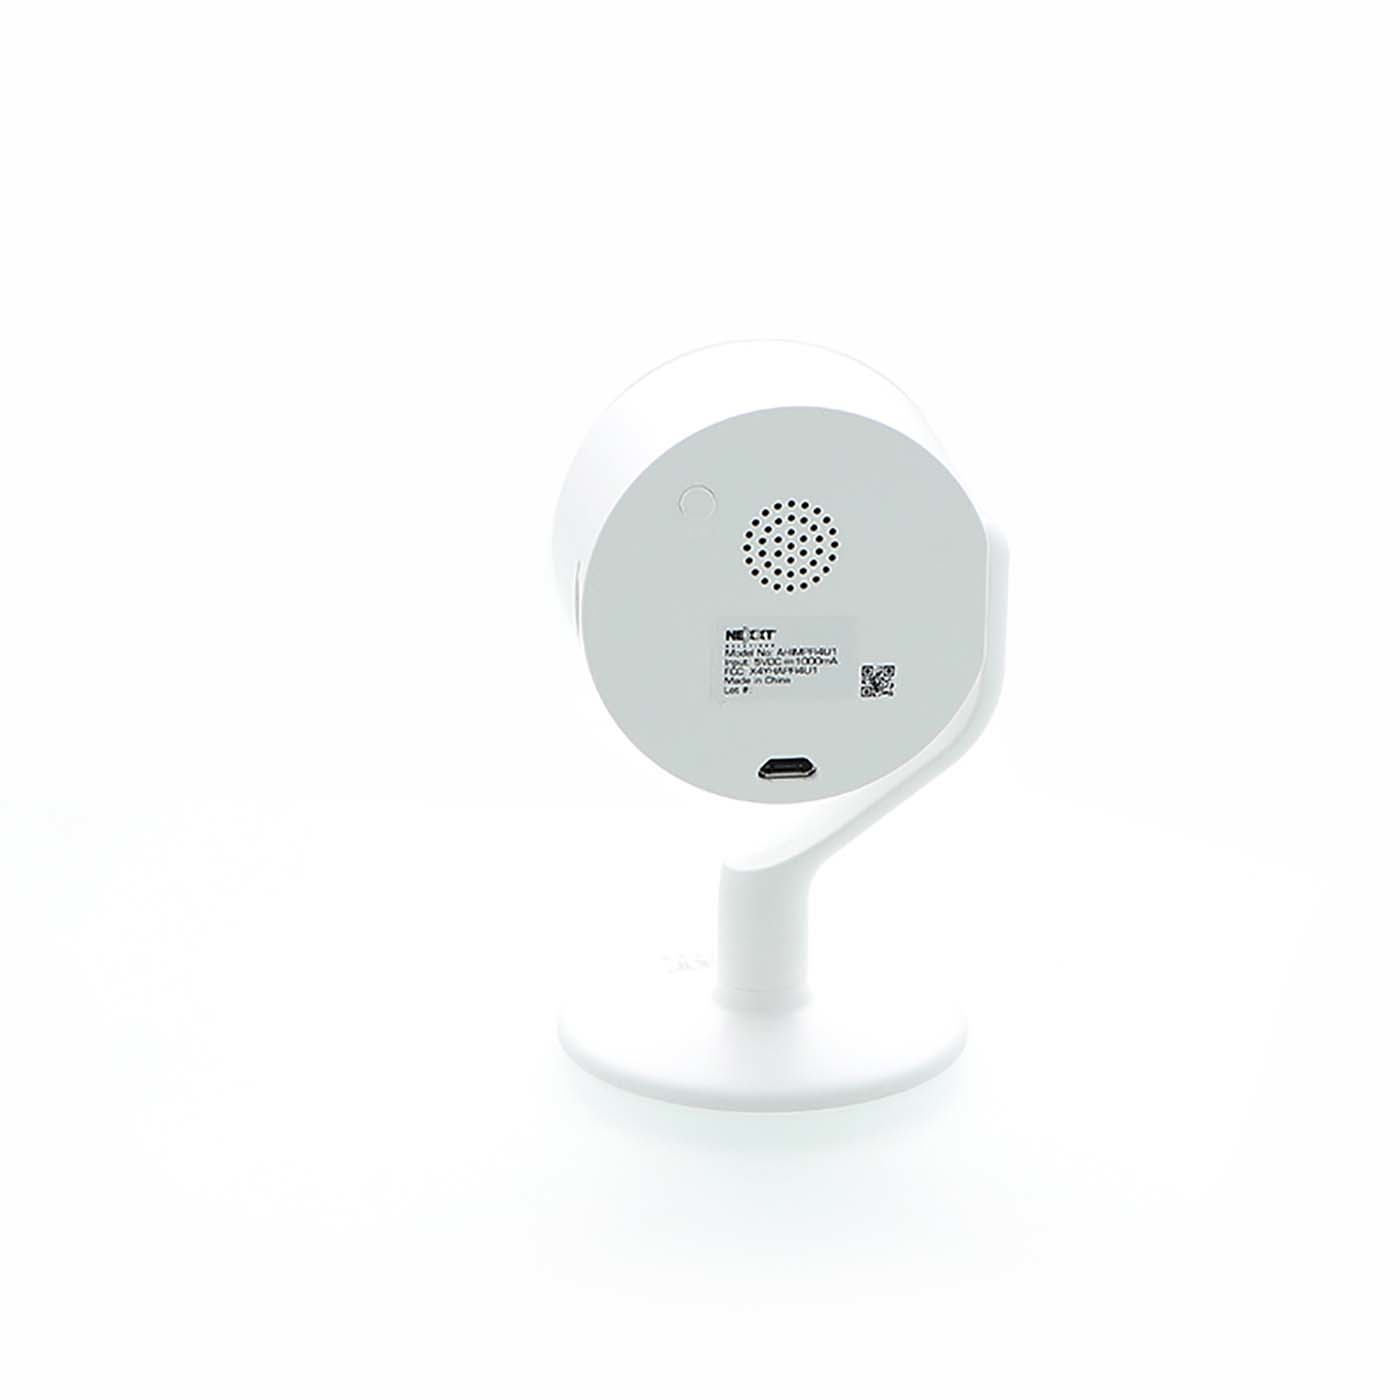 Kit de Alarma Inteligente de Sirena y Sensor NEXXT con Conexión Wi-Fi